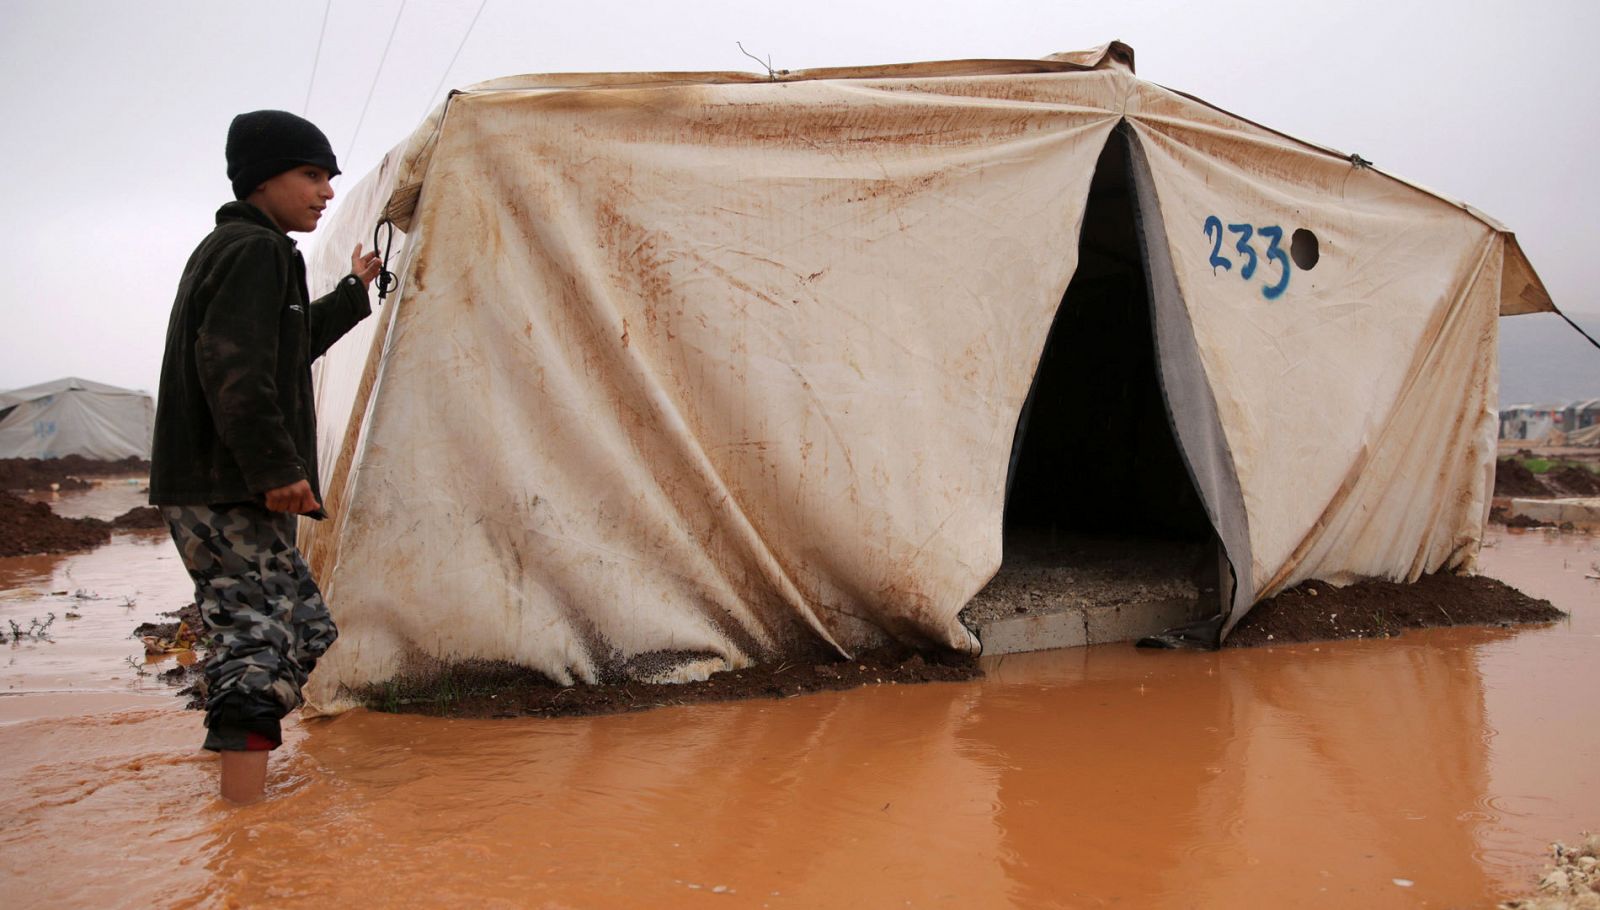 Un chico sirio camina cerca de la tienda de campaña inundada donde duerme